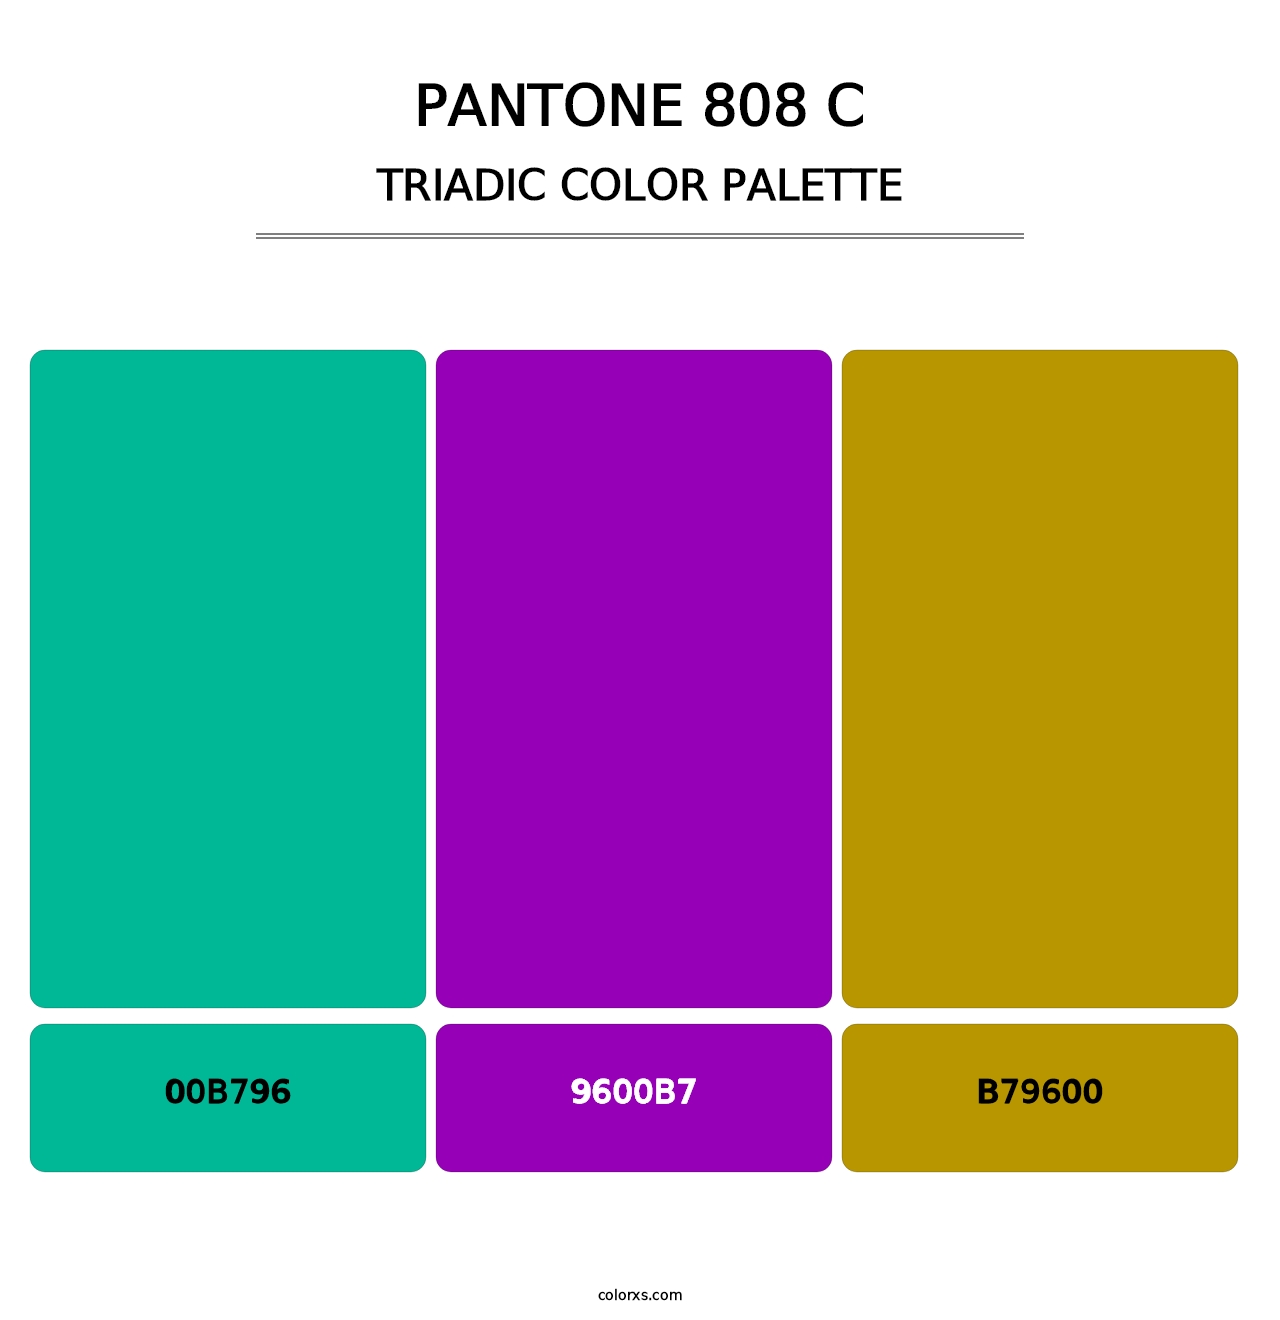 PANTONE 808 C - Triadic Color Palette